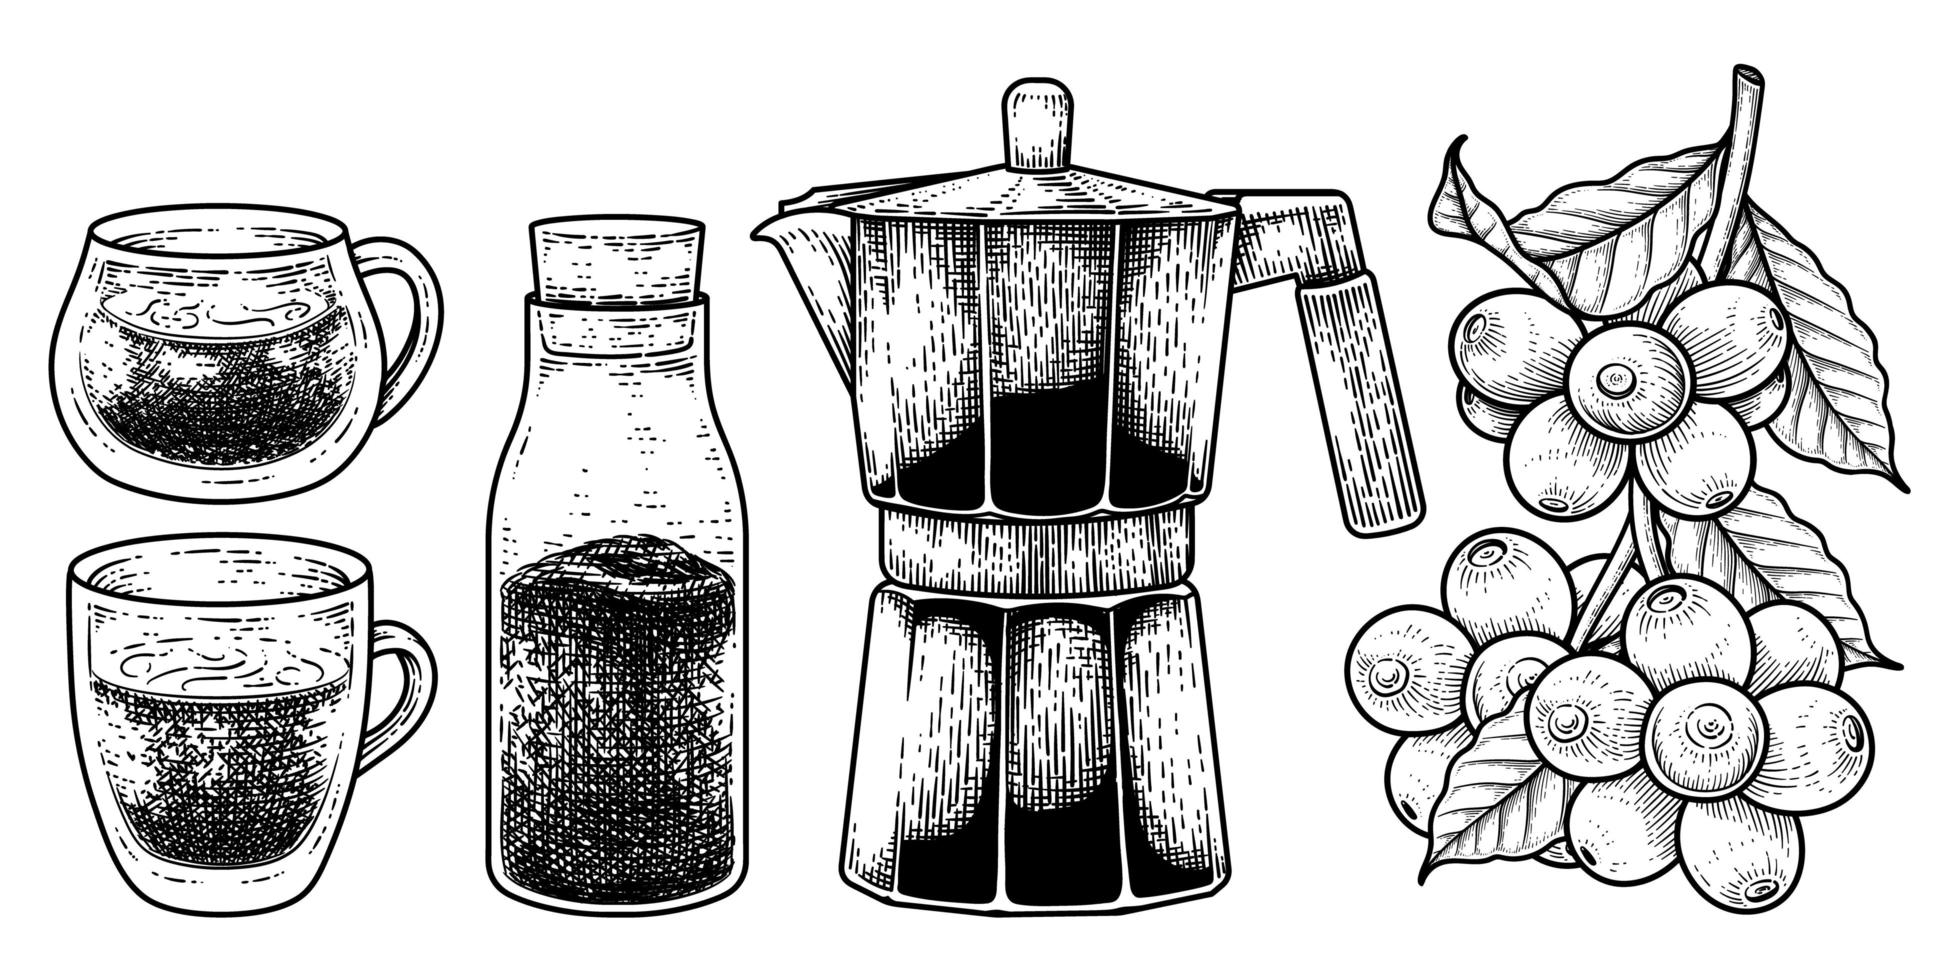 boceto conjunto de vectores de herramientas de cafetera. vasos, botella de café instantáneo, cafetera espresso o moka y una rama de café con bayas ilustración dibujada a mano